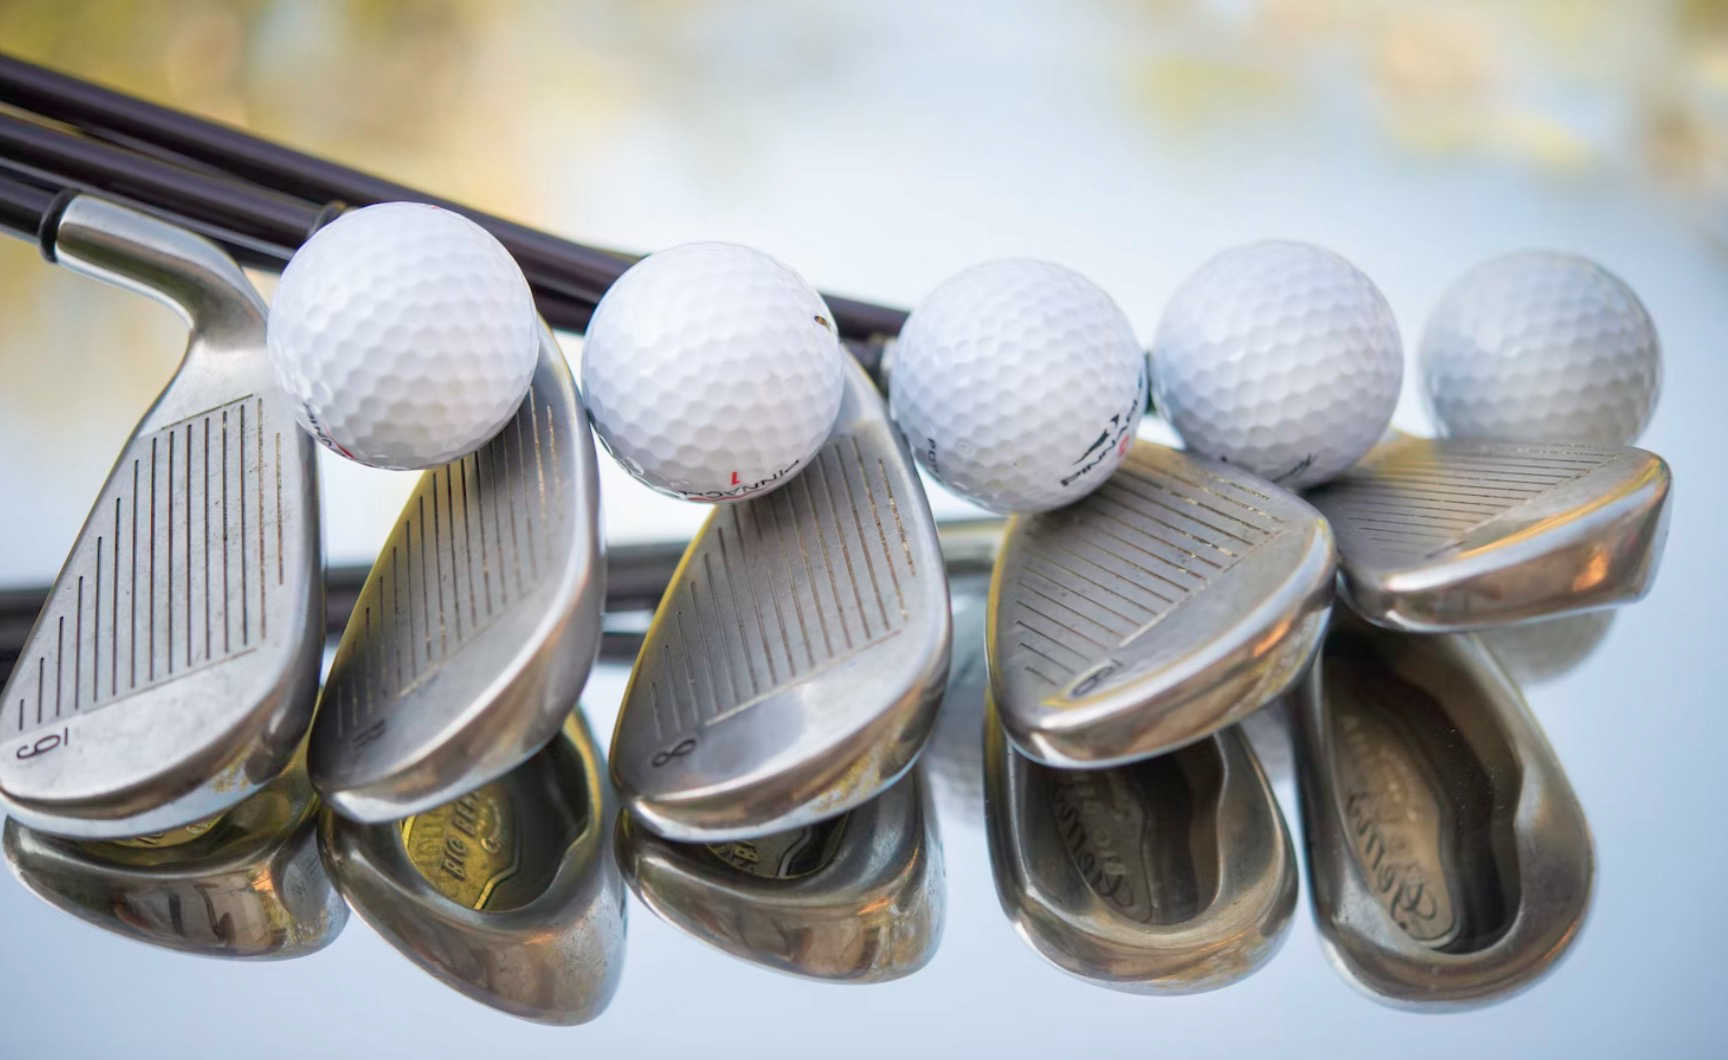 Les 20 accessoires de golf indispensables : la liste ultime